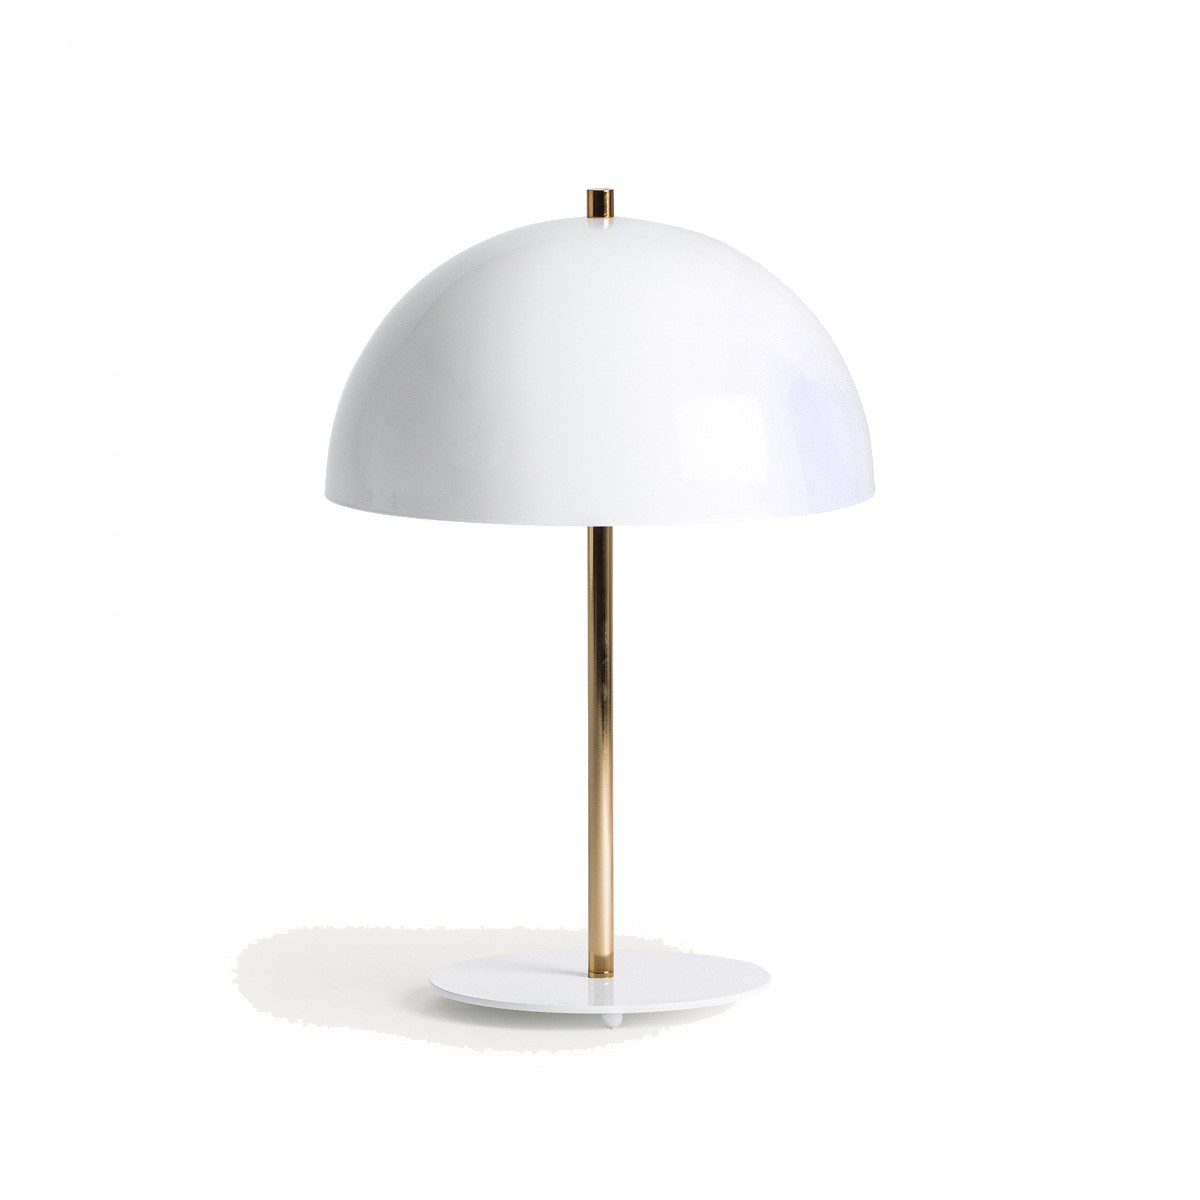 Estila Moderní art deco stolní lampa Ragazzia z kovu zlaté barvy s bílým polobloukovitým stínítkem 59cm